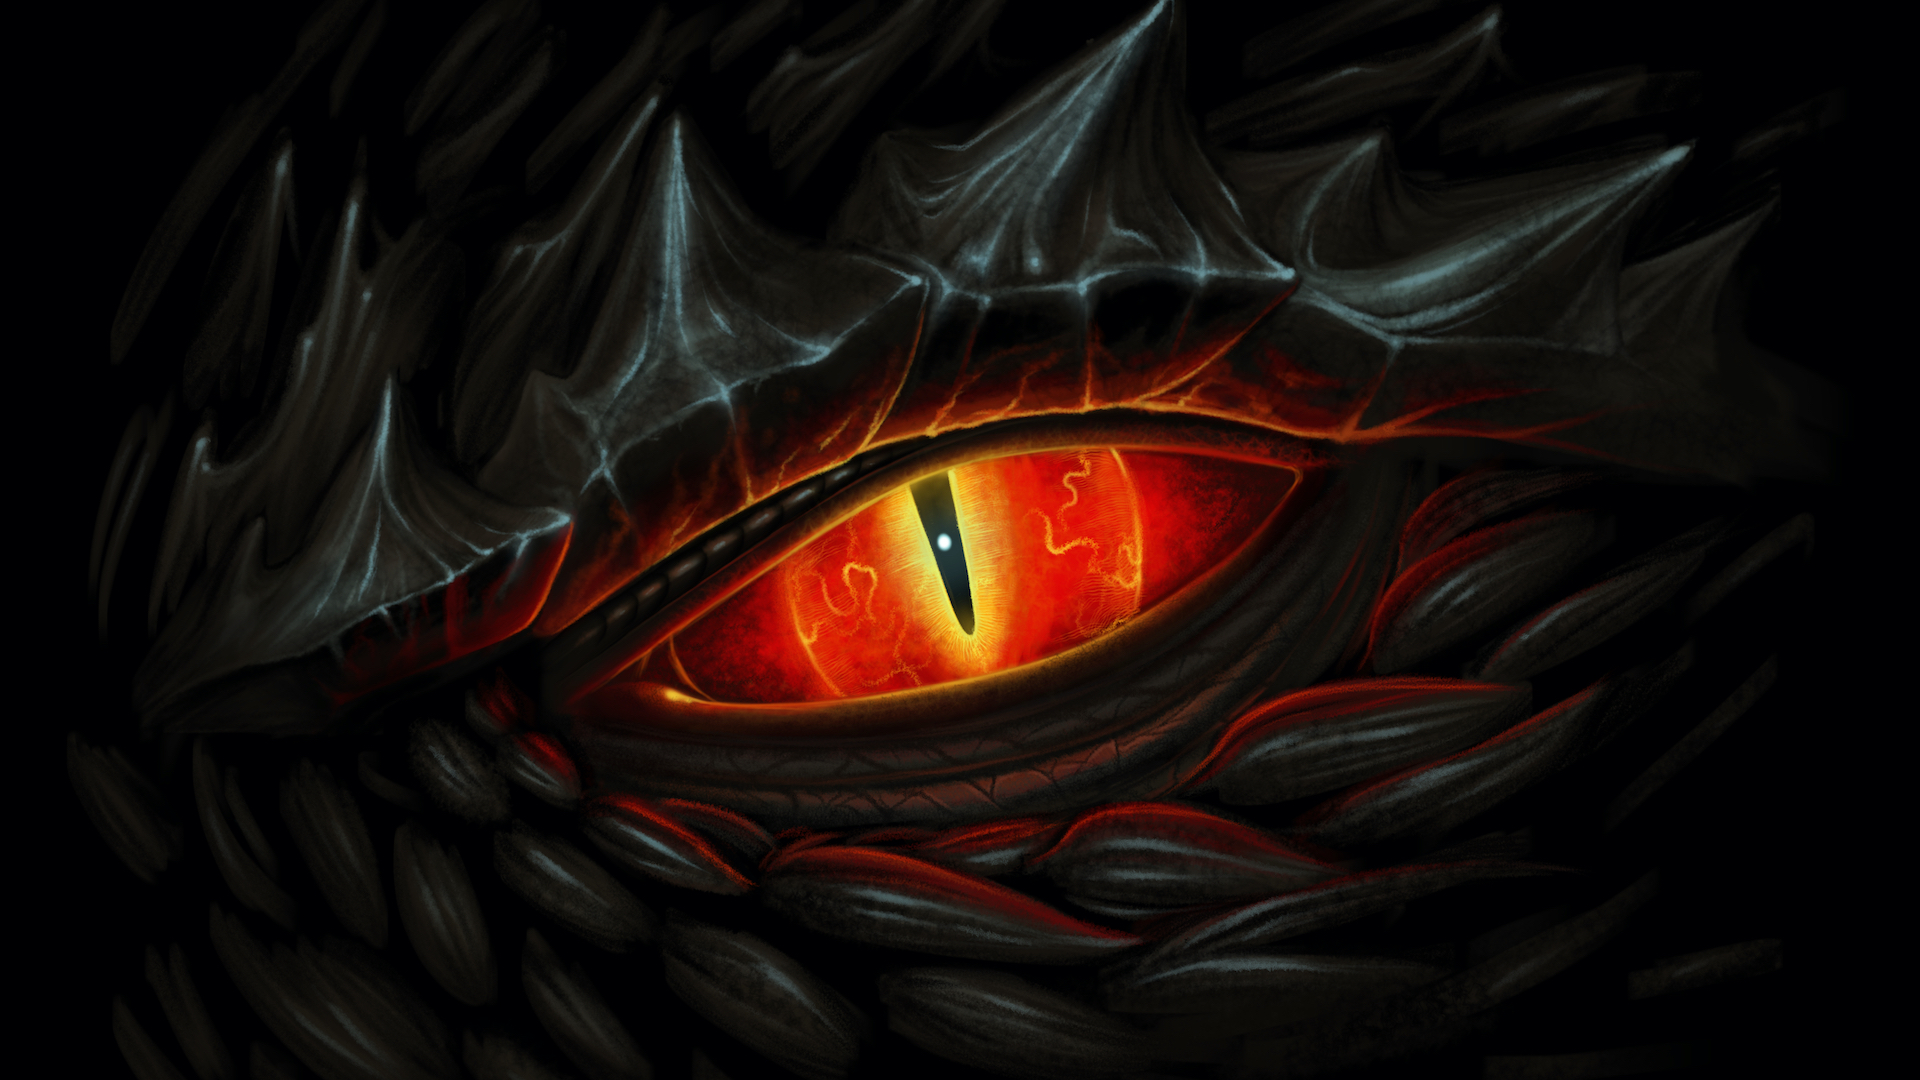 A dragon's eye